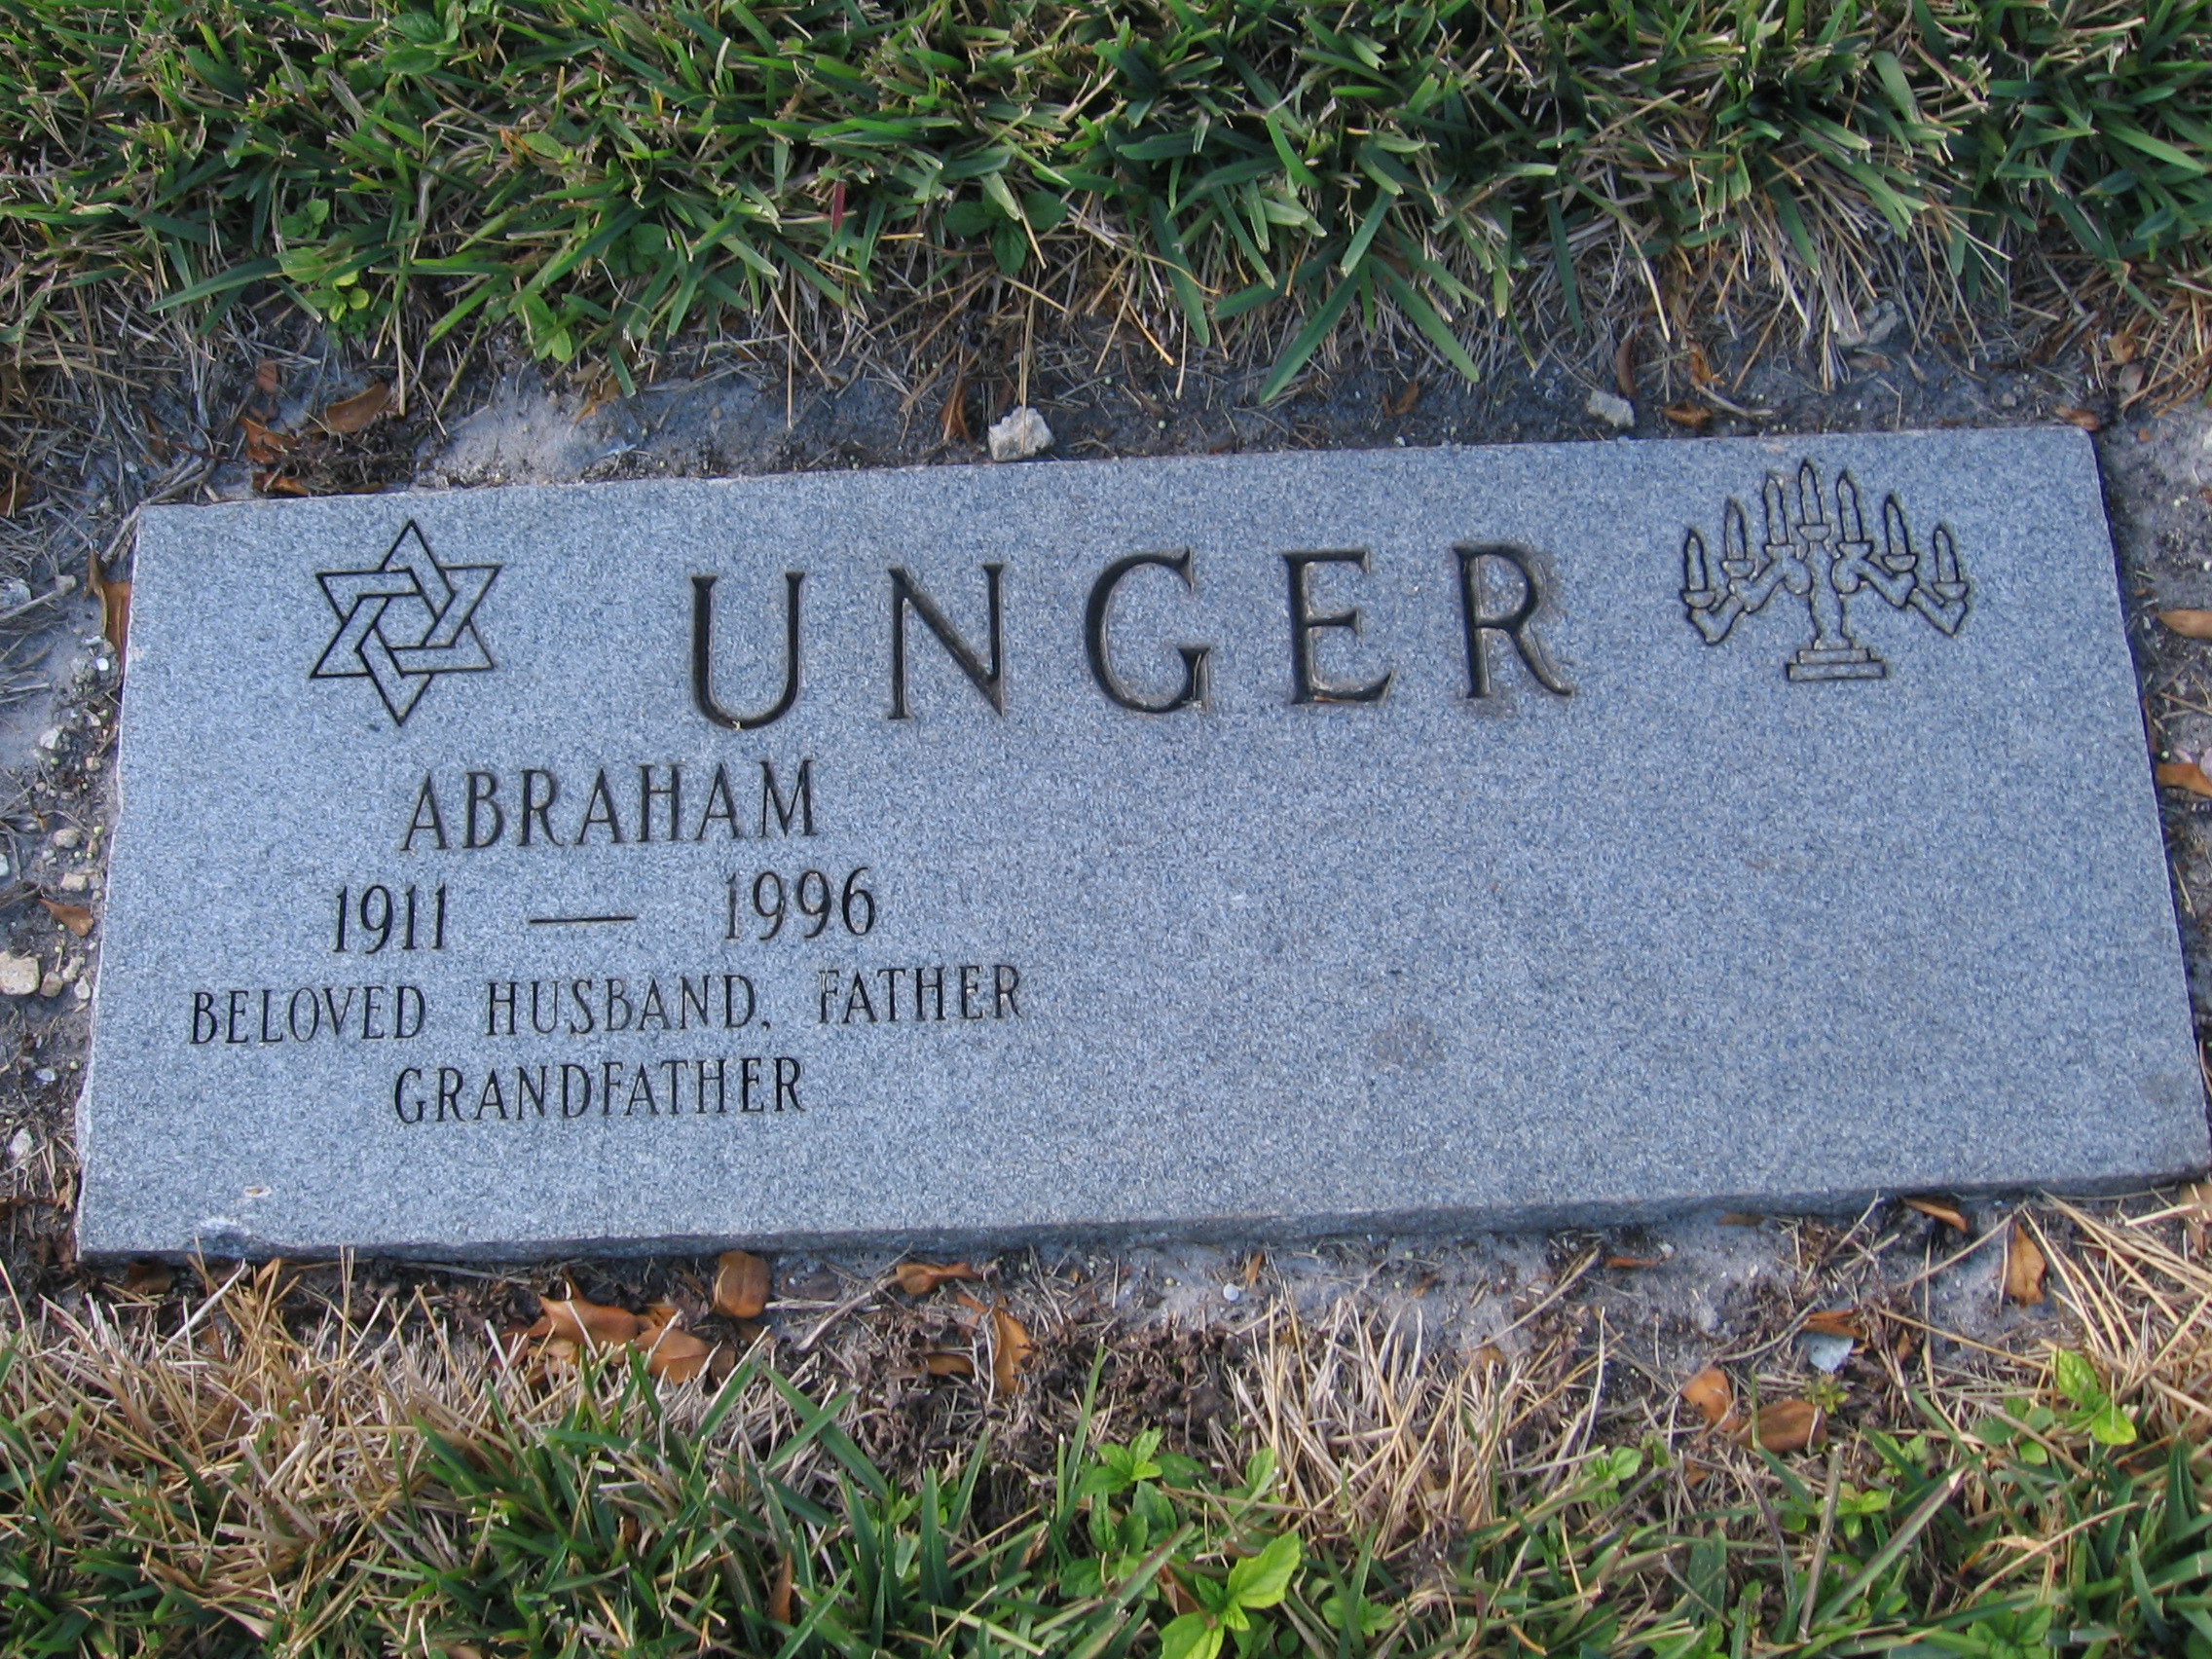 Abraham Unger